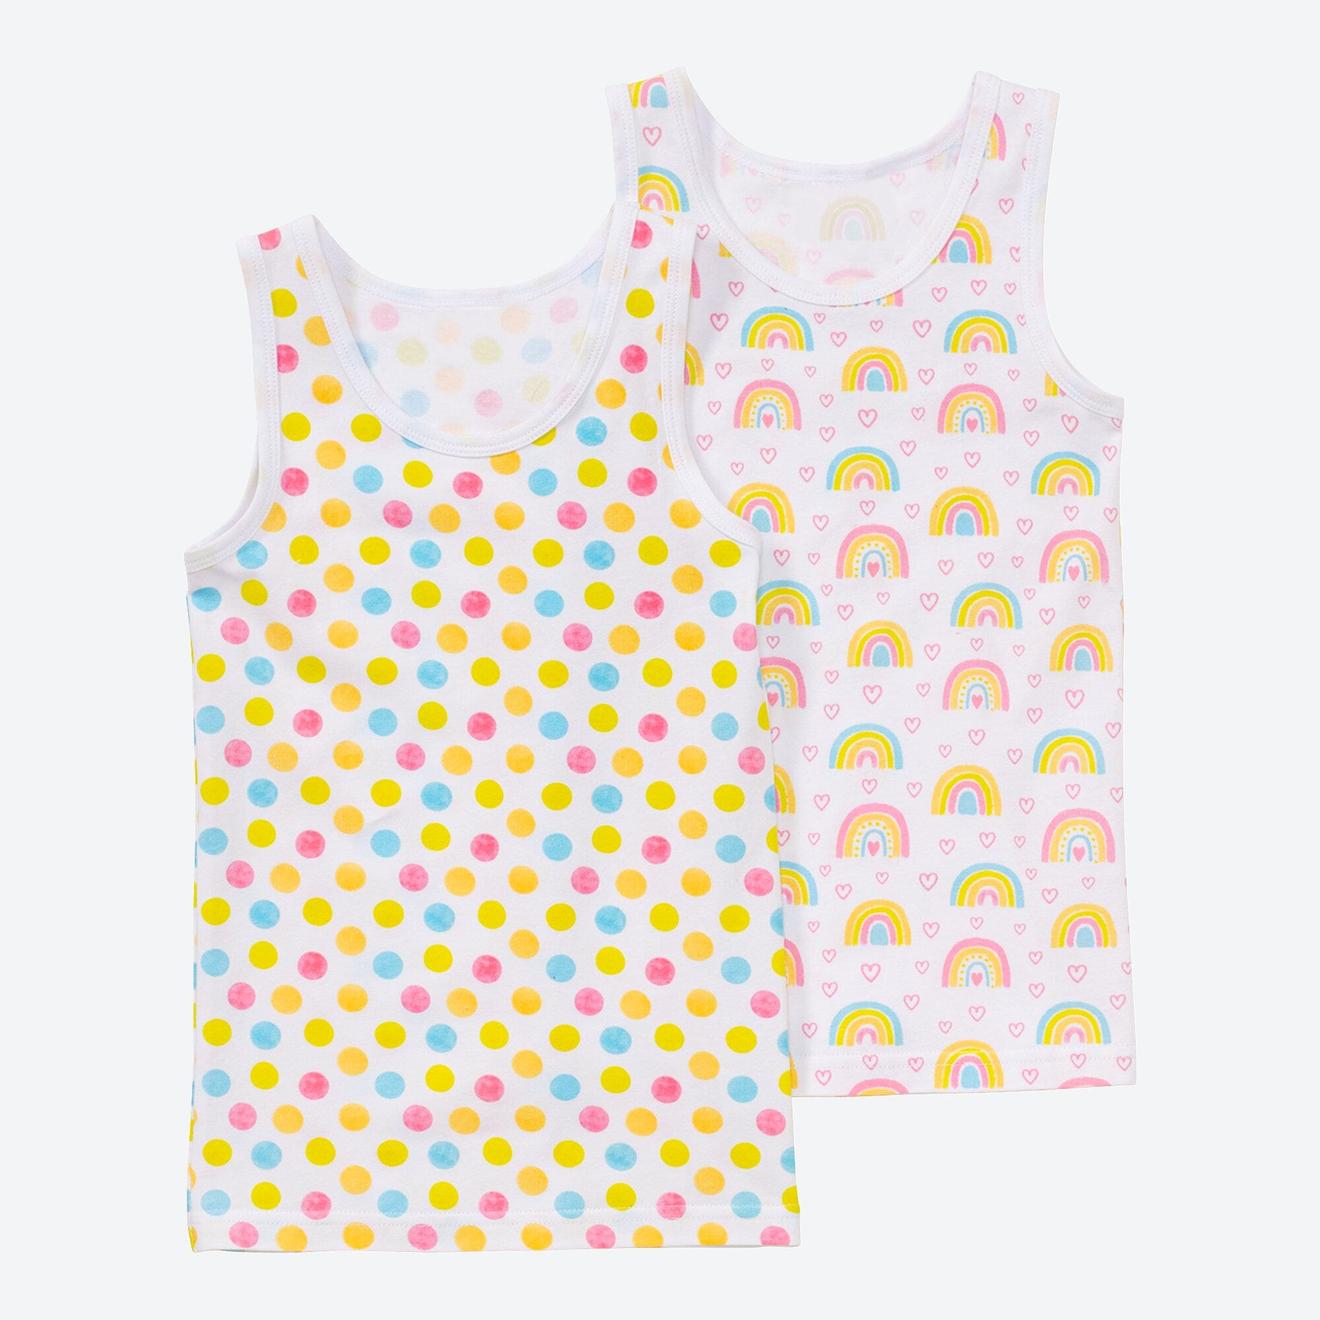 Mädchen-Unterhemd mit Regenbogen-Muster, 2er-Pack für 4,99€ in NKD